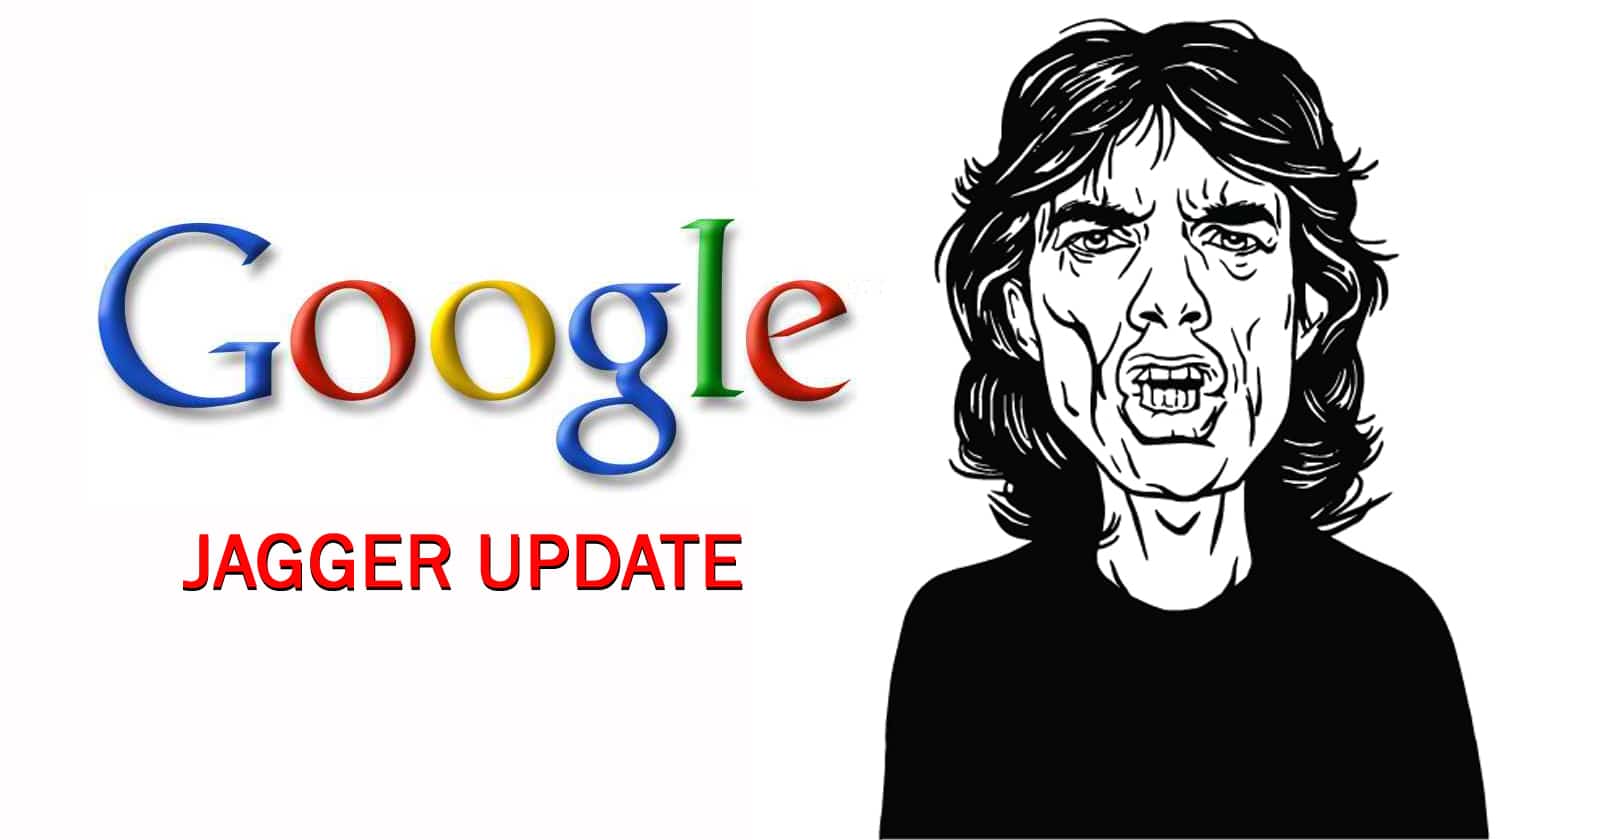 google-jagger-update.jpg